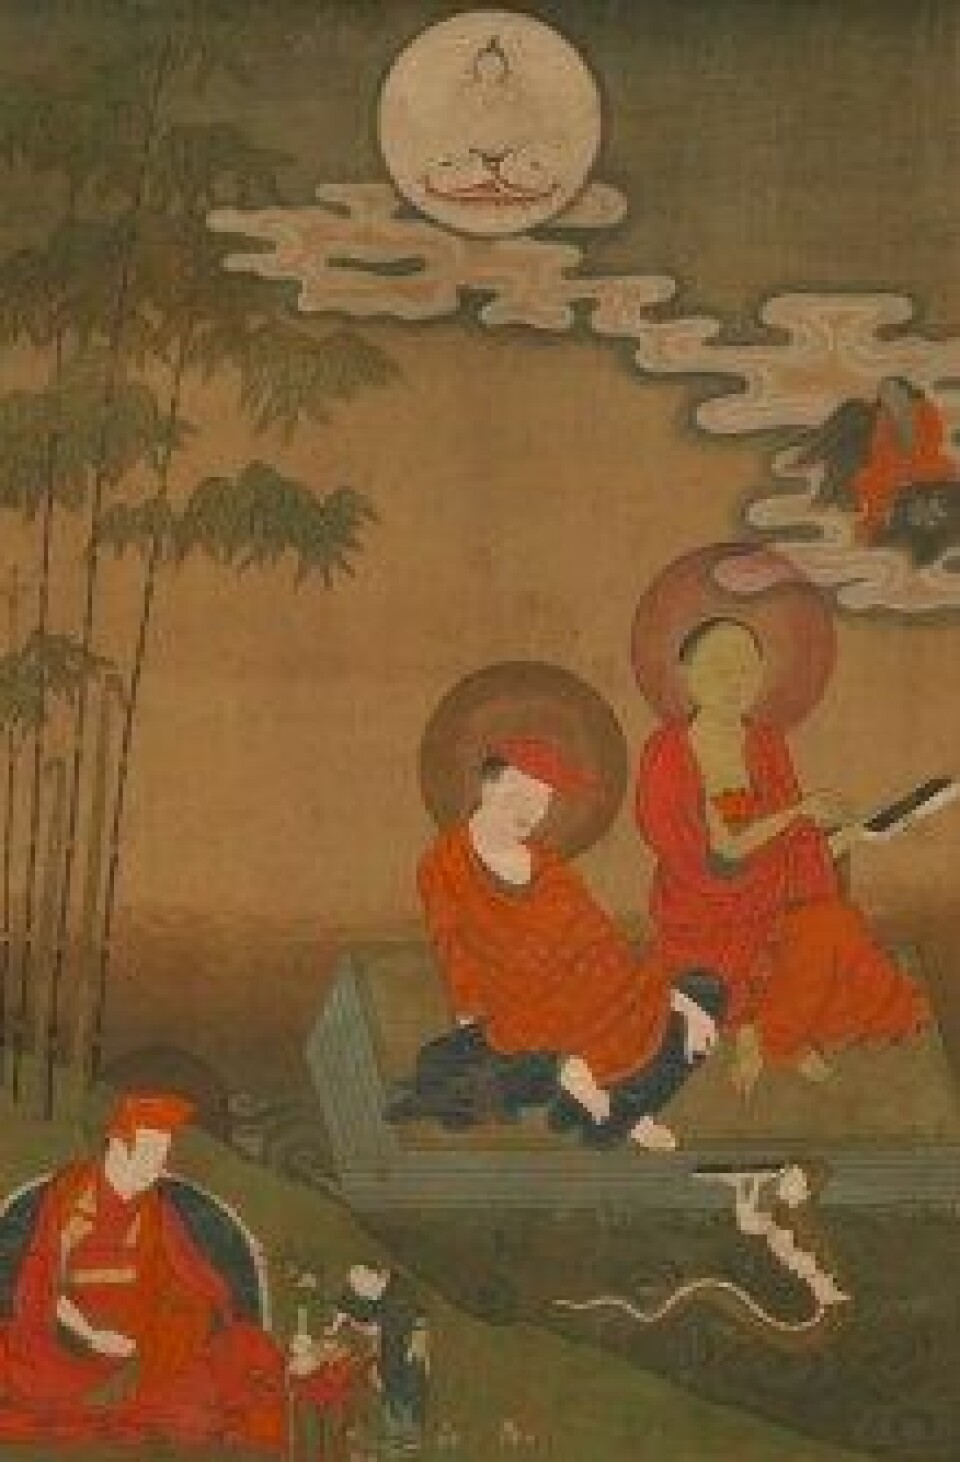 Nagarjuna and Aryadeva as Two Great Indian Buddhist Scholastics. Maleri fra 1900-tallet, ukjent kunstner. (Kilde: Wikimedia commons)